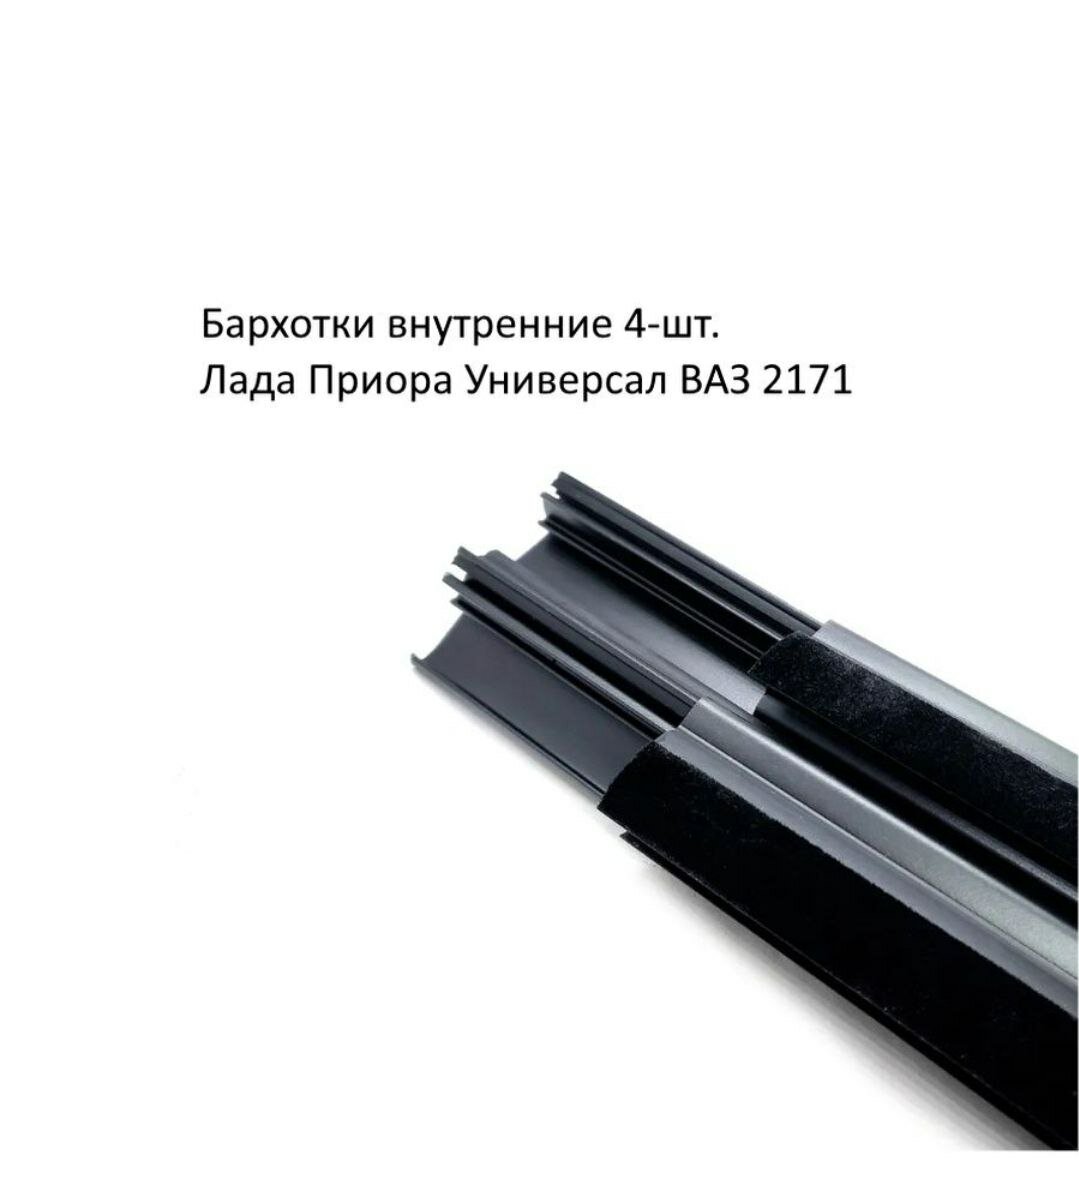 Бархотки ВАЗ 2171 Лада Приора (универсал) внутренние 4 шт.